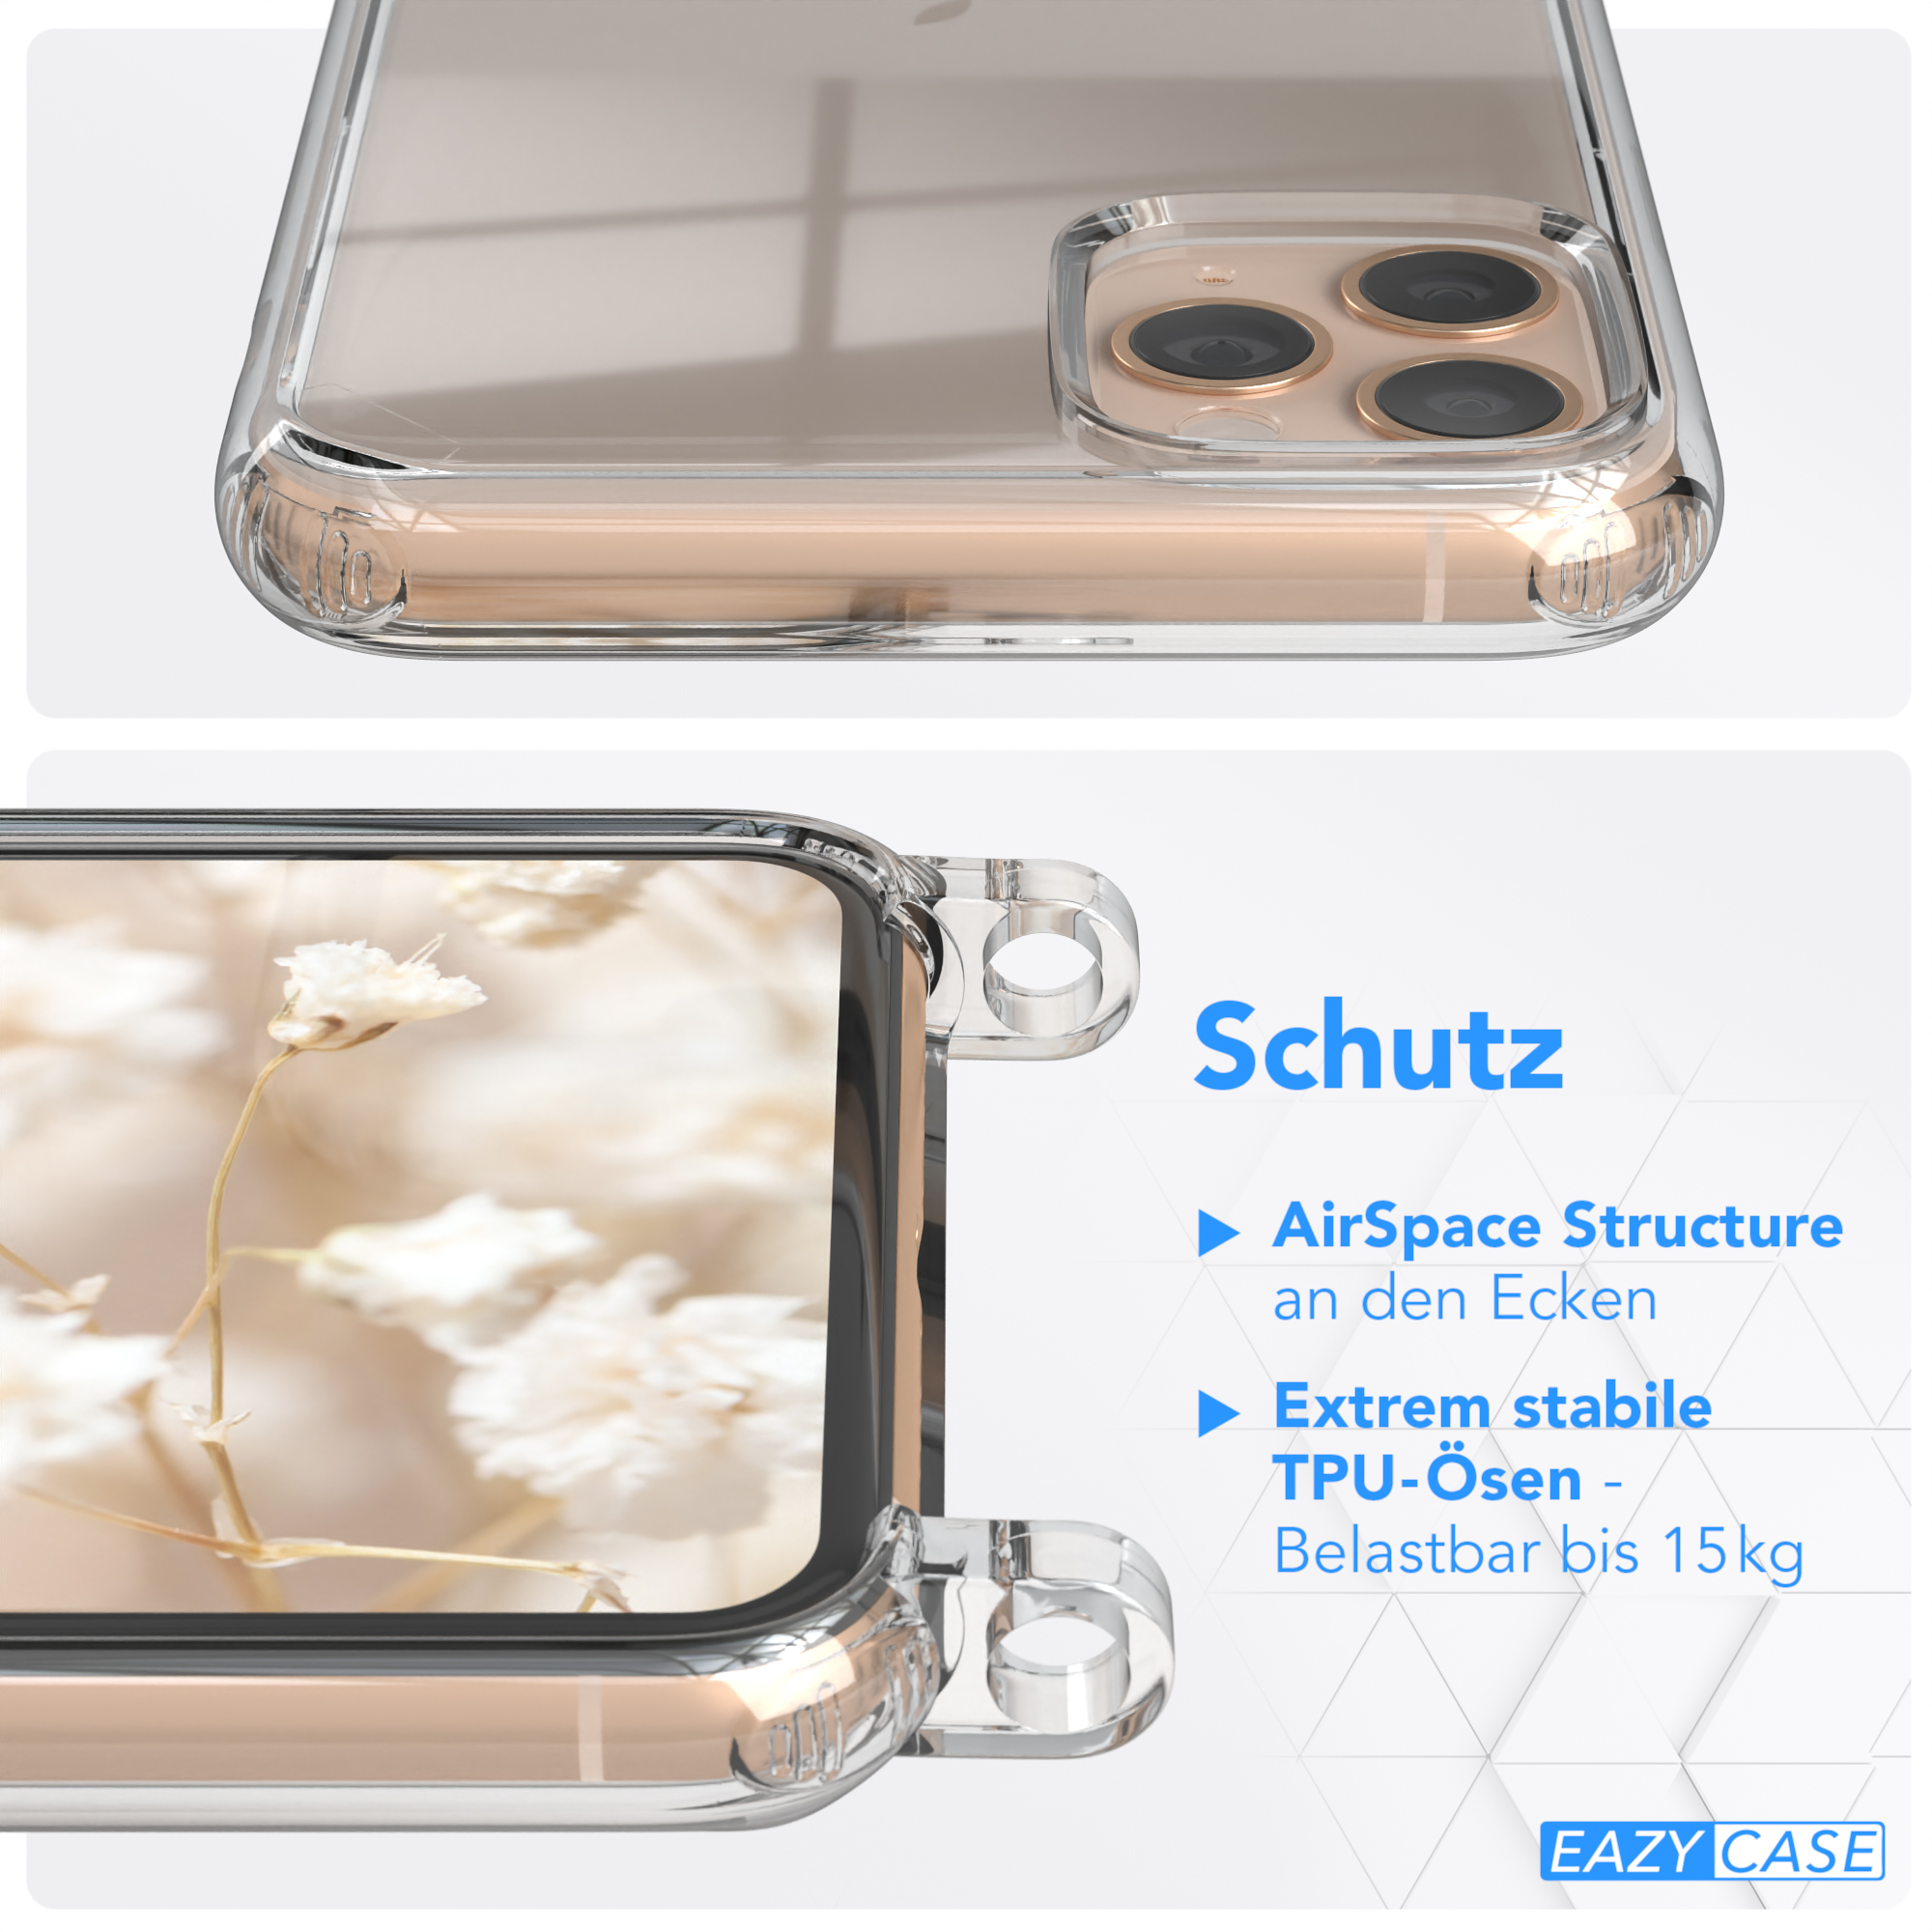 EAZY CASE Transparente Handyhülle mit Blau Boho Style, iPhone Umhängetasche, 11 Weiß Max, Kordel Apple, Pro 